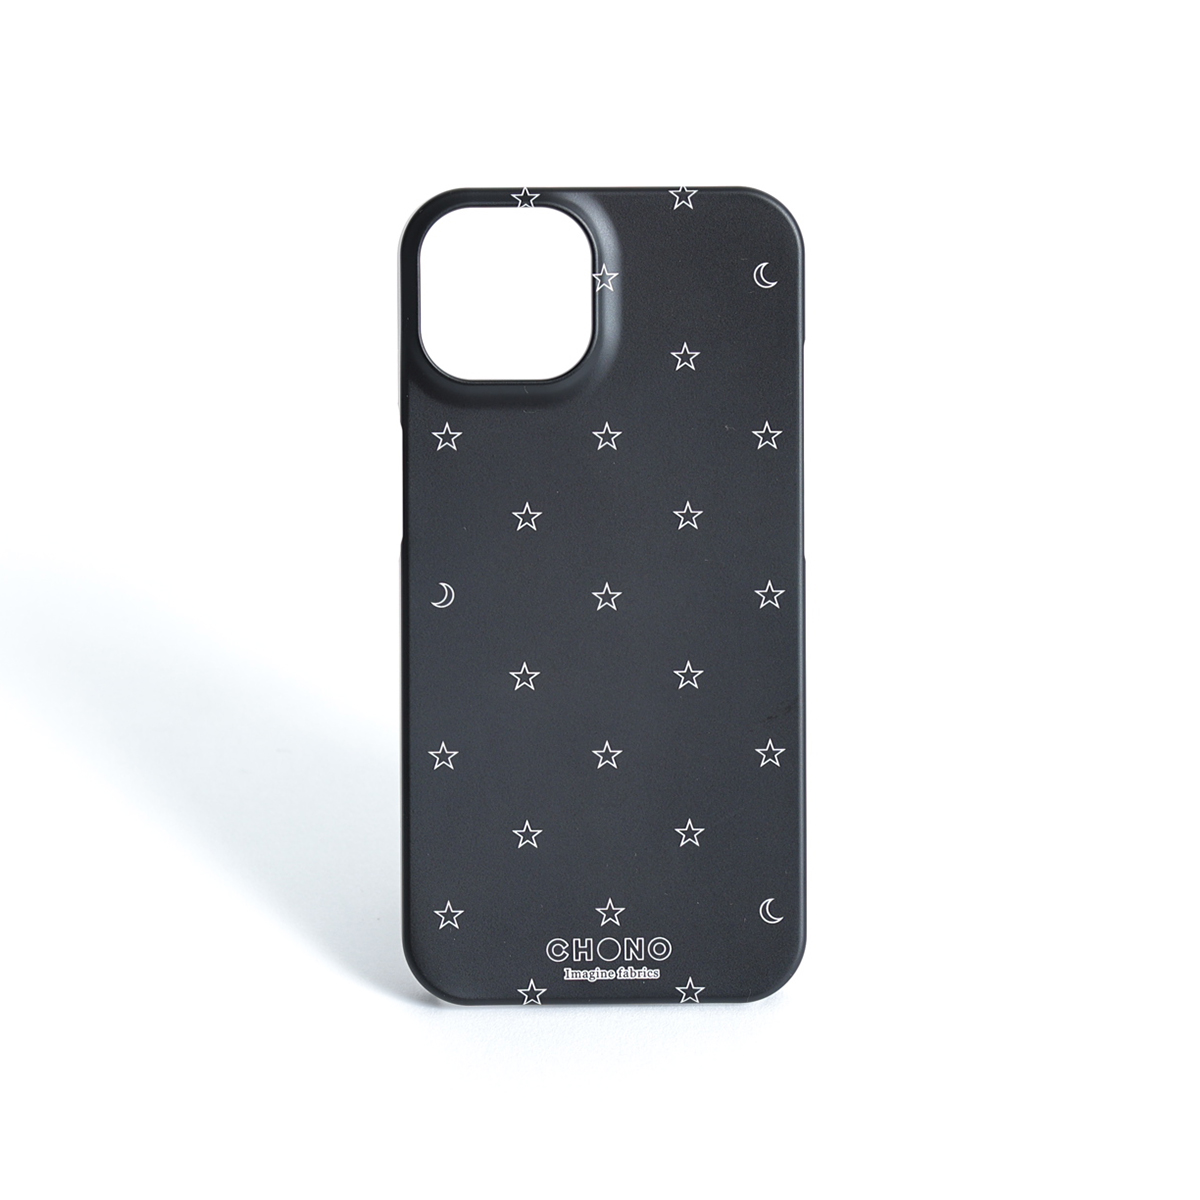 11月下旬お届け予定ご受注商品『Stella polka dot』 Android hard case画像